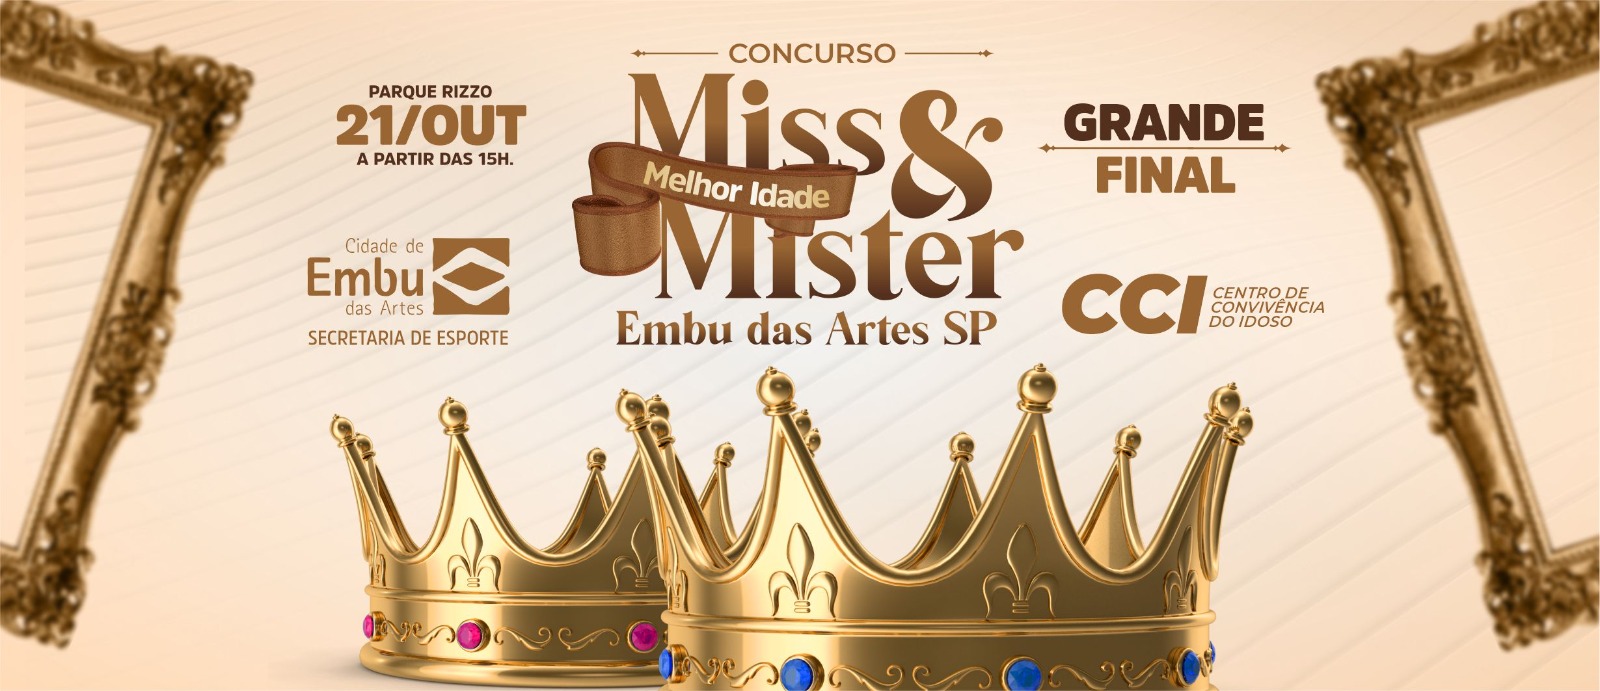 Final do concurso 'Miss & Mister Melhor Idade' acontece no sábado. Participe!